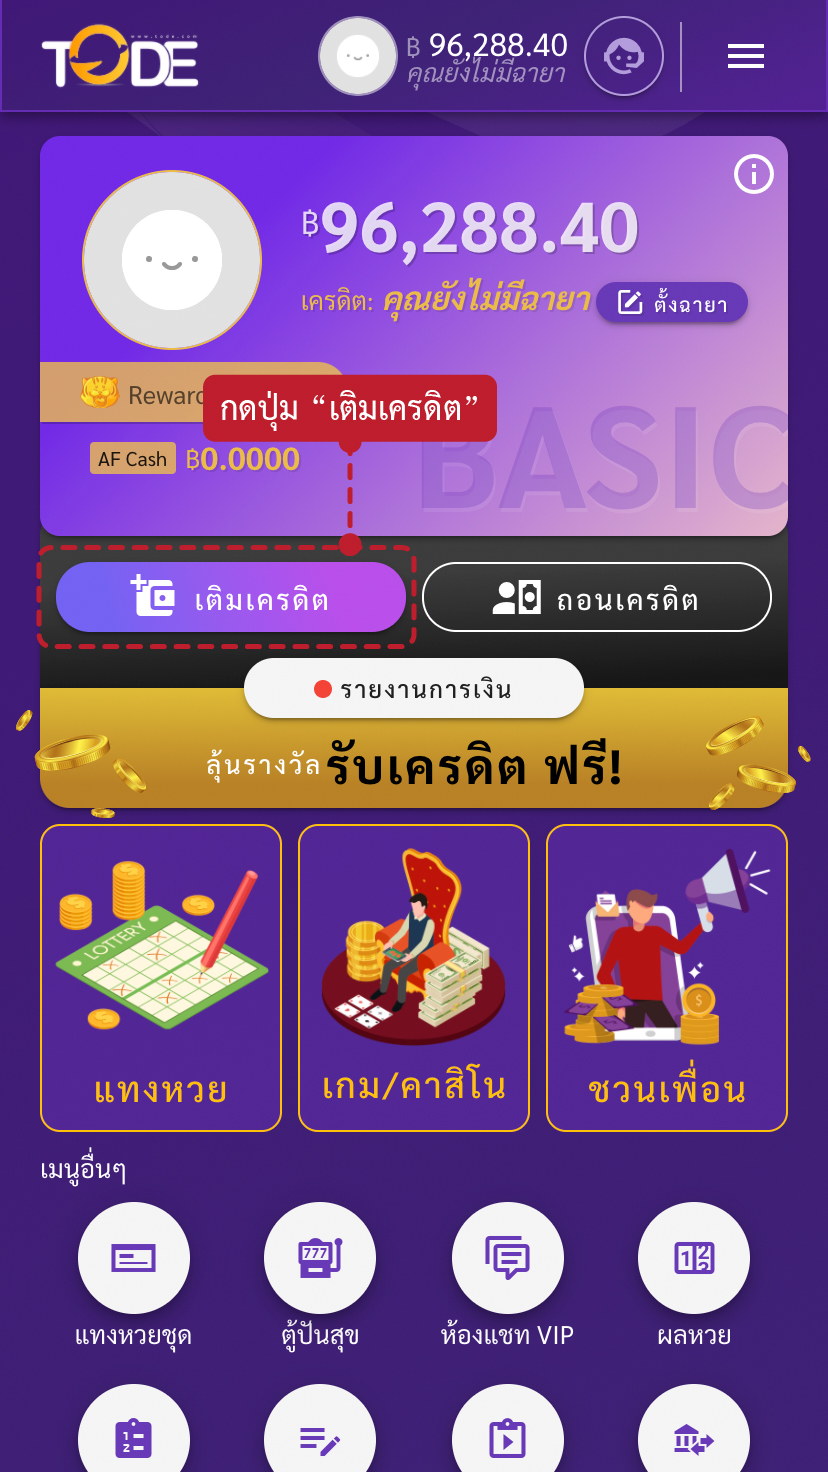 ขั้นตอนวิธีการฝากเงินเว็บโต๊ดเว็บแทงหวยอันดับ1ของไทยสูงสุดบาทละ1200